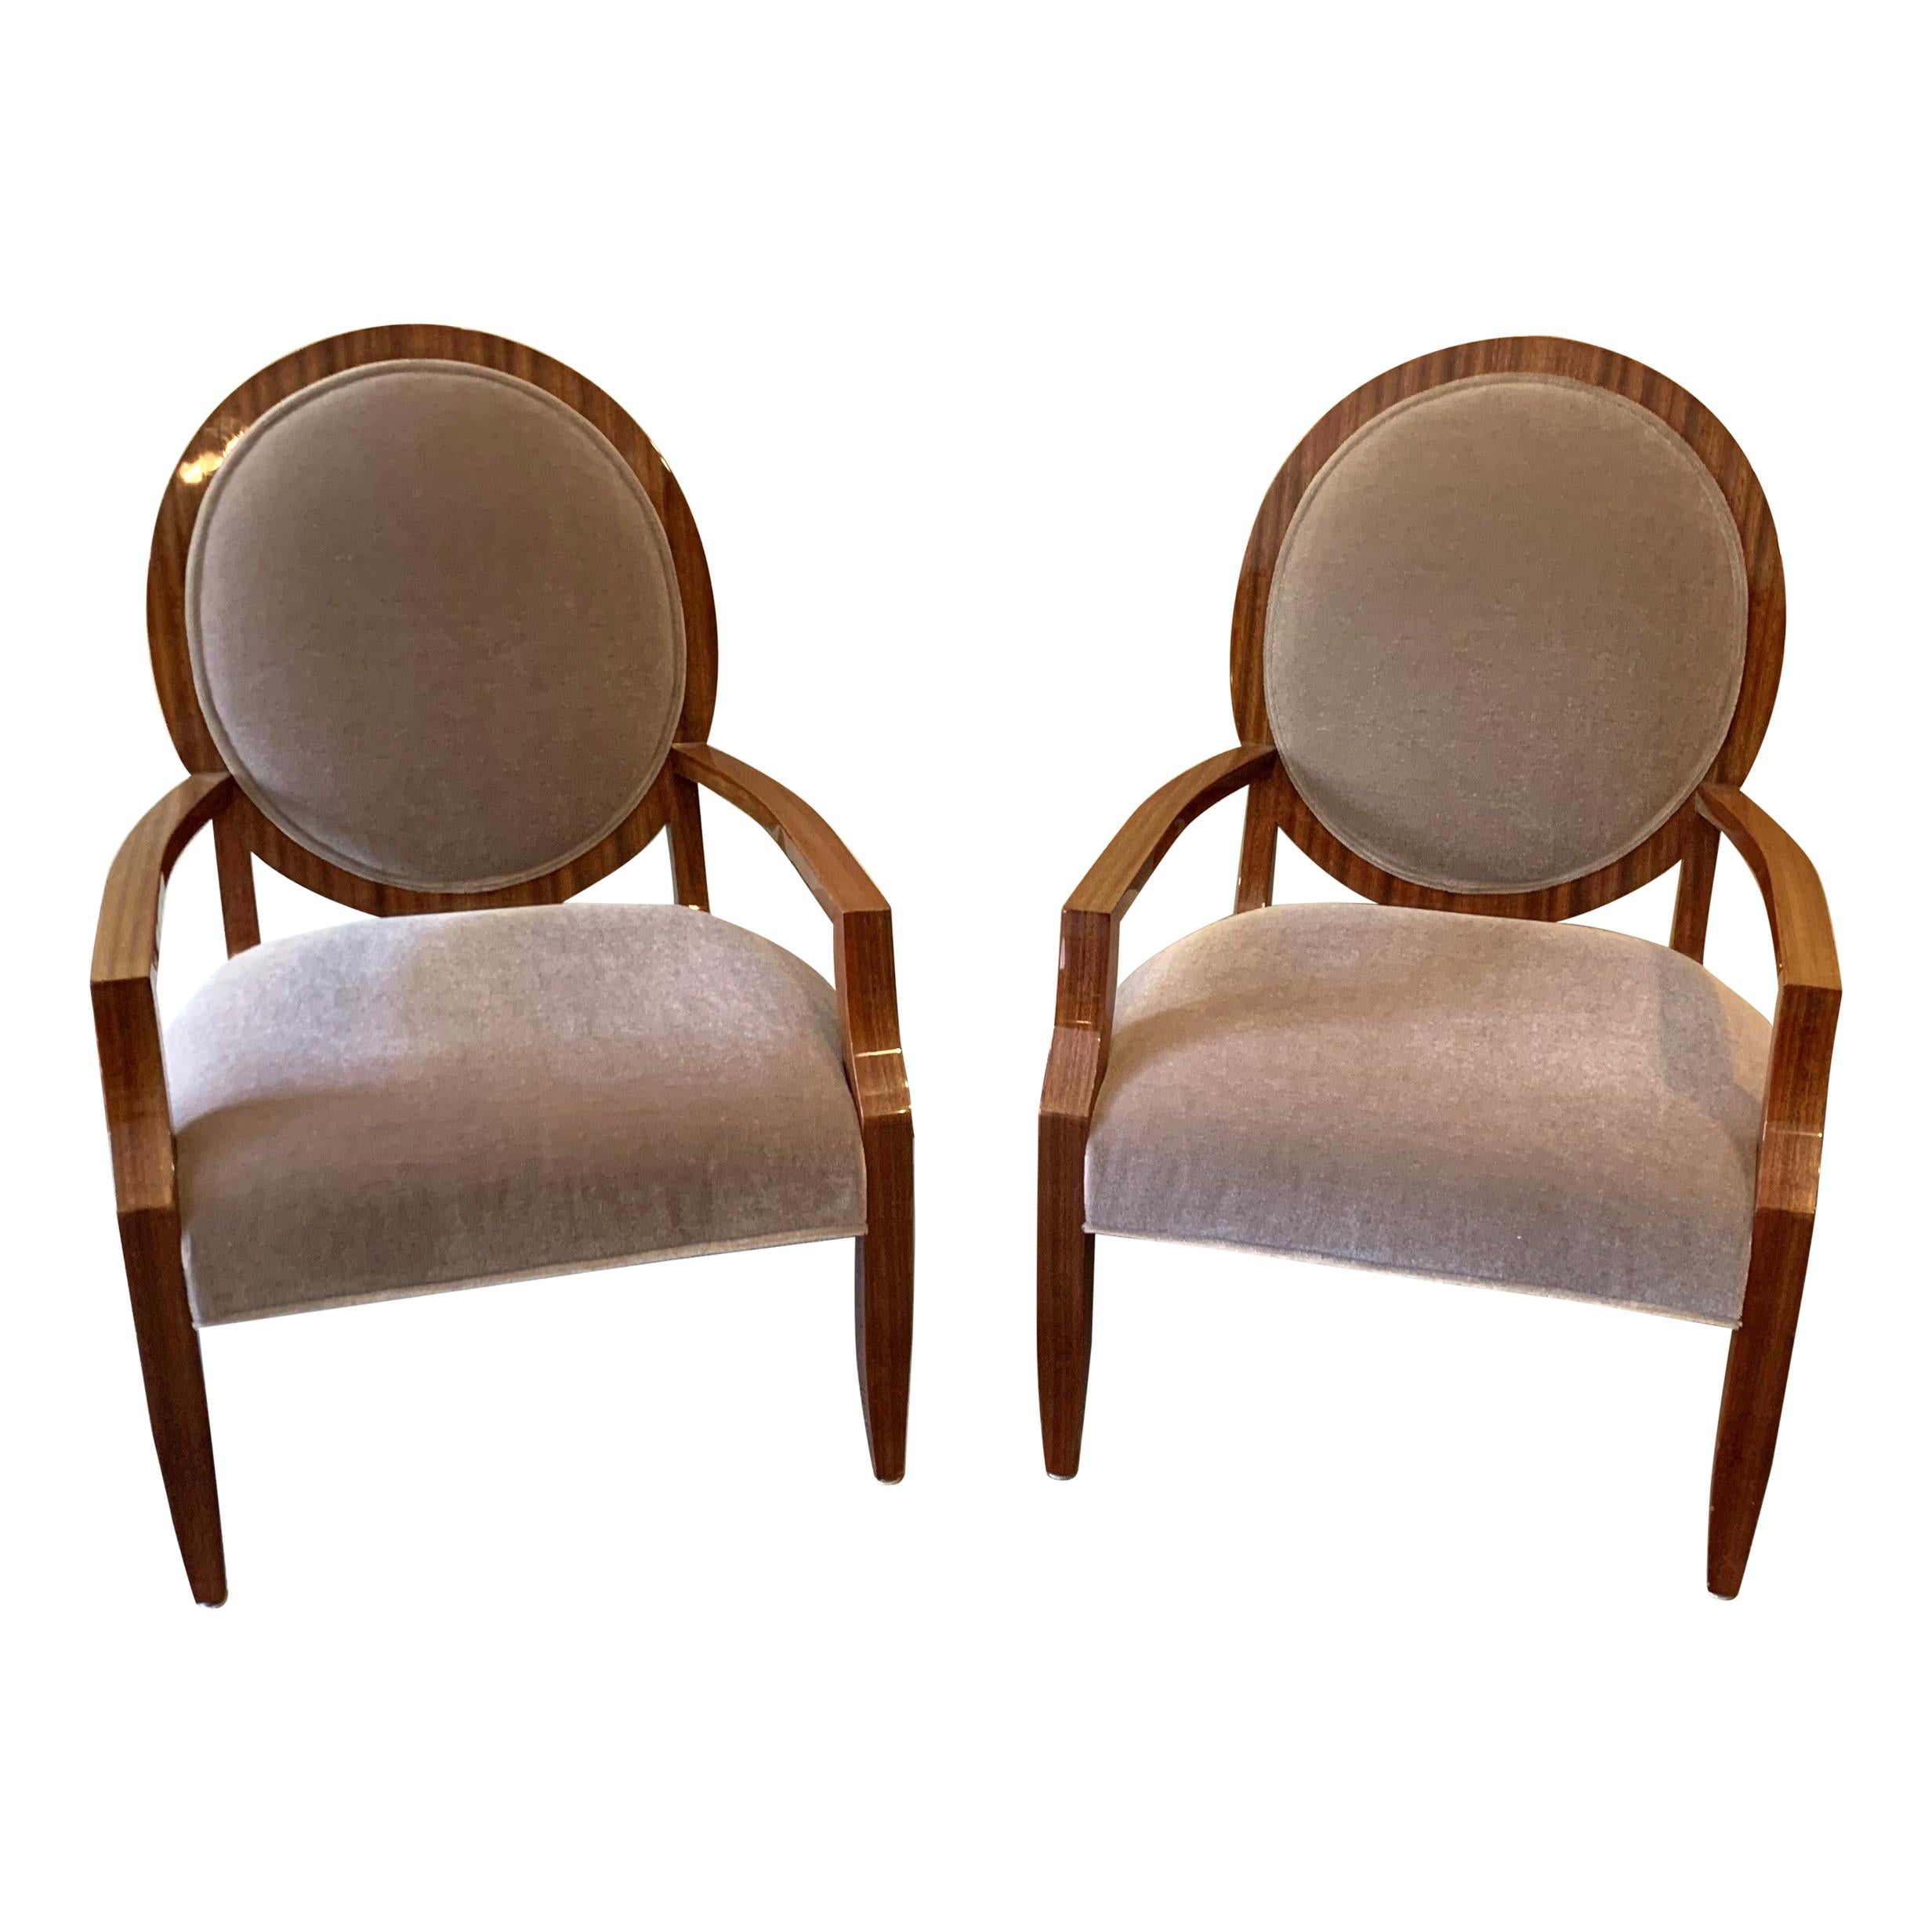 Merveilleuse paire de fauteuils en bois de macassar et mohair, de style moderne du milieu du siècle dernier